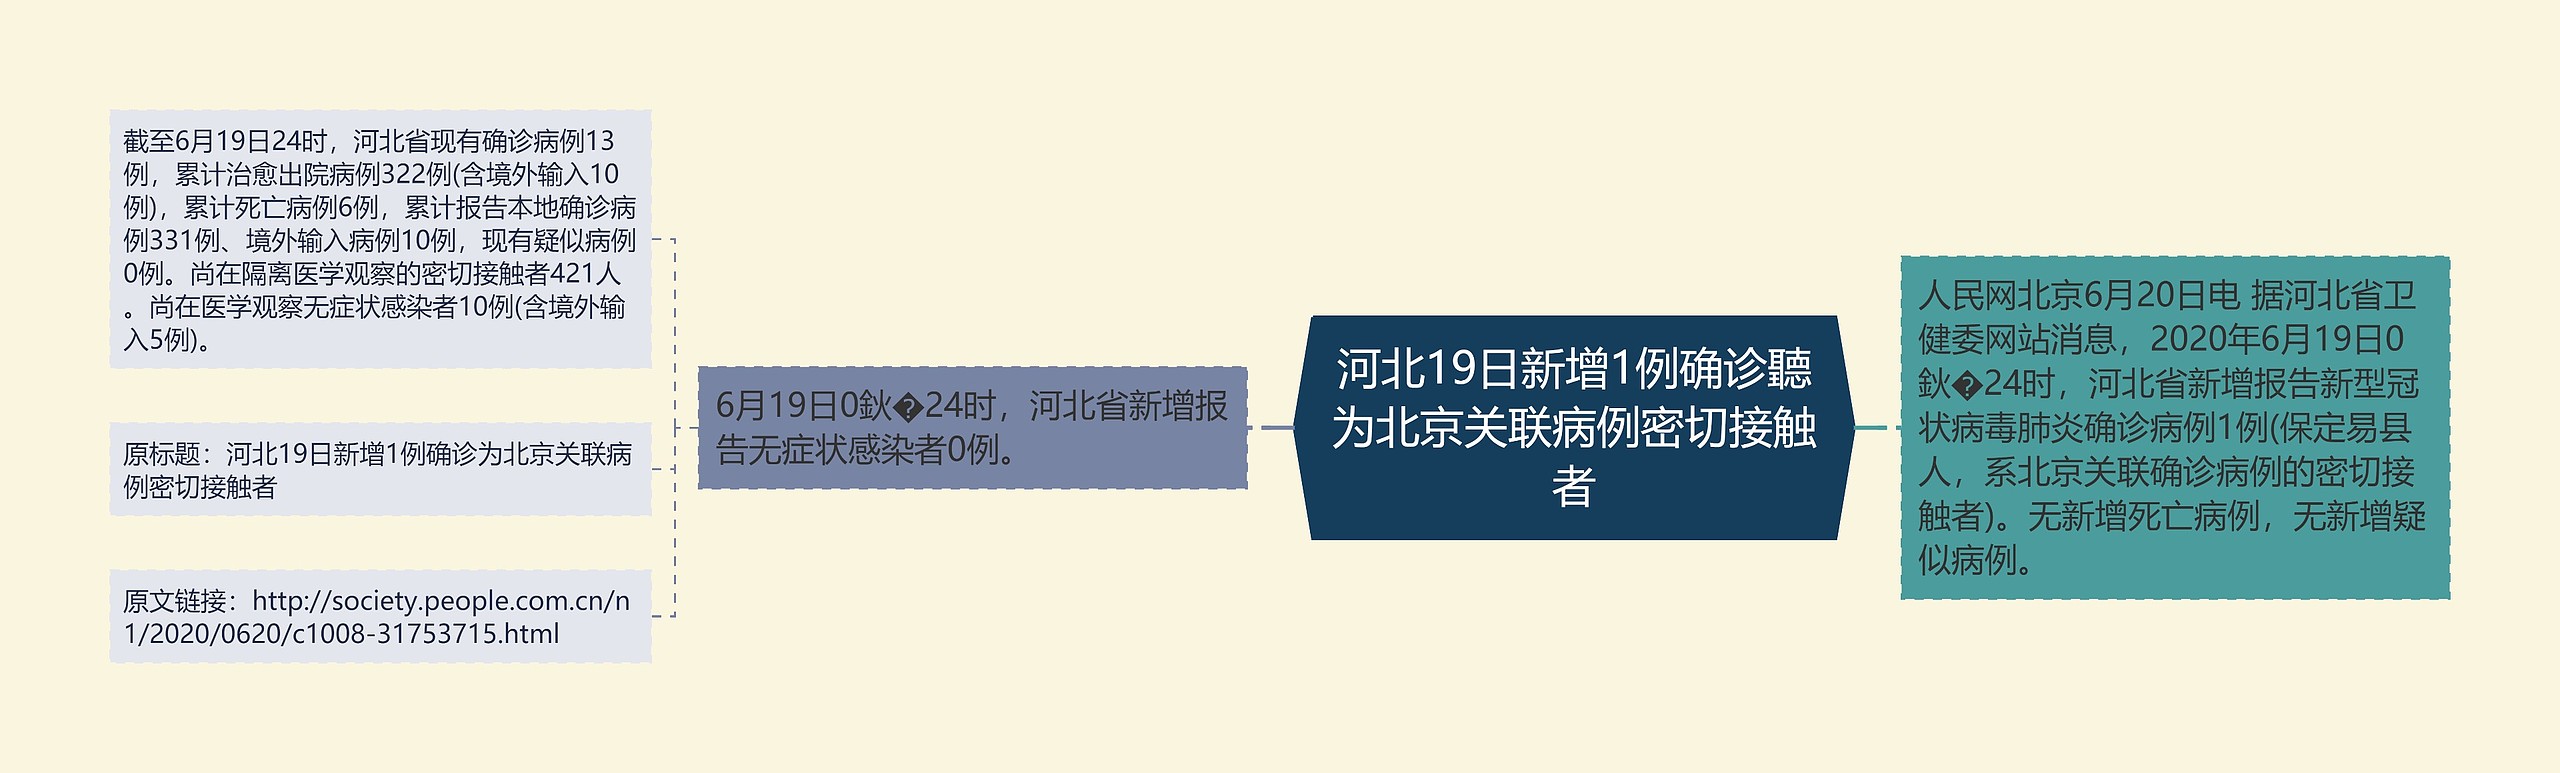 河北19日新增1例确诊聽为北京关联病例密切接触者